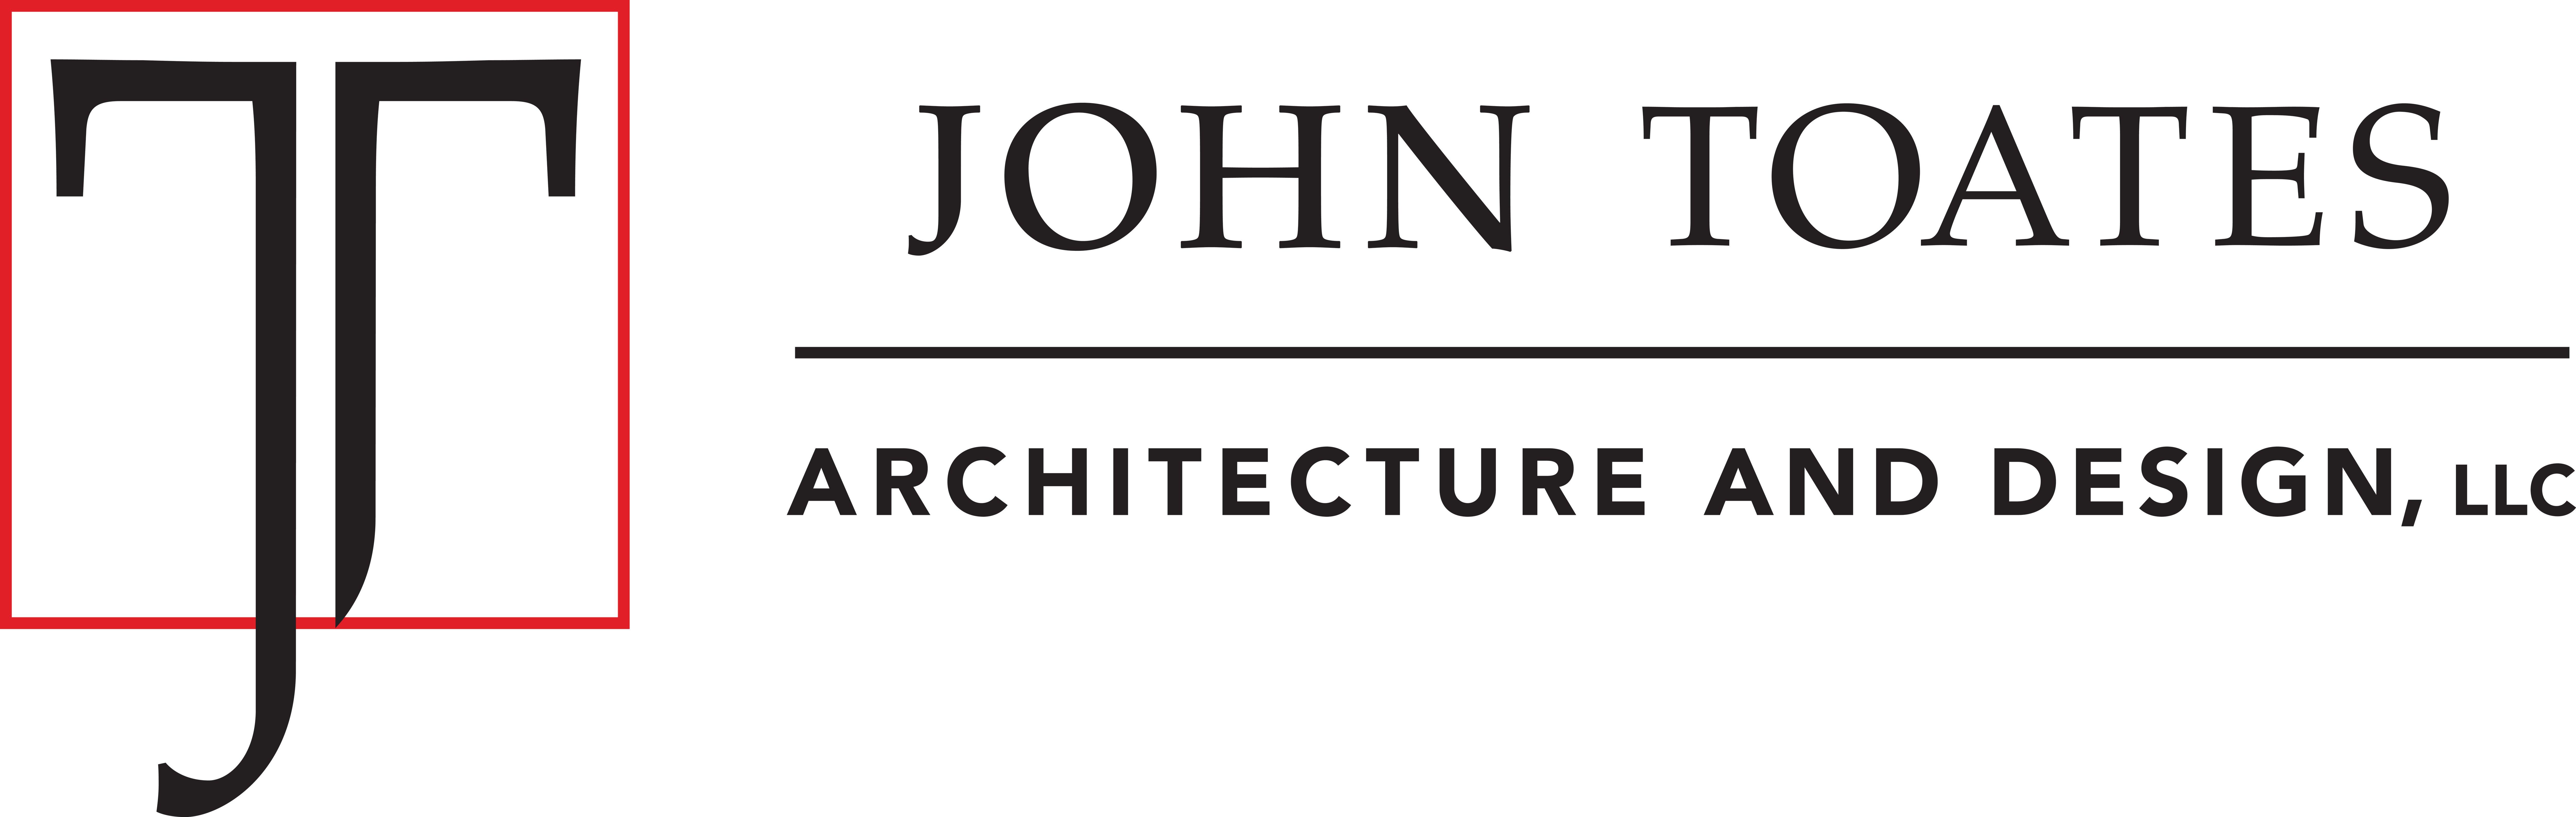 John Toates Architecture &amp; Design